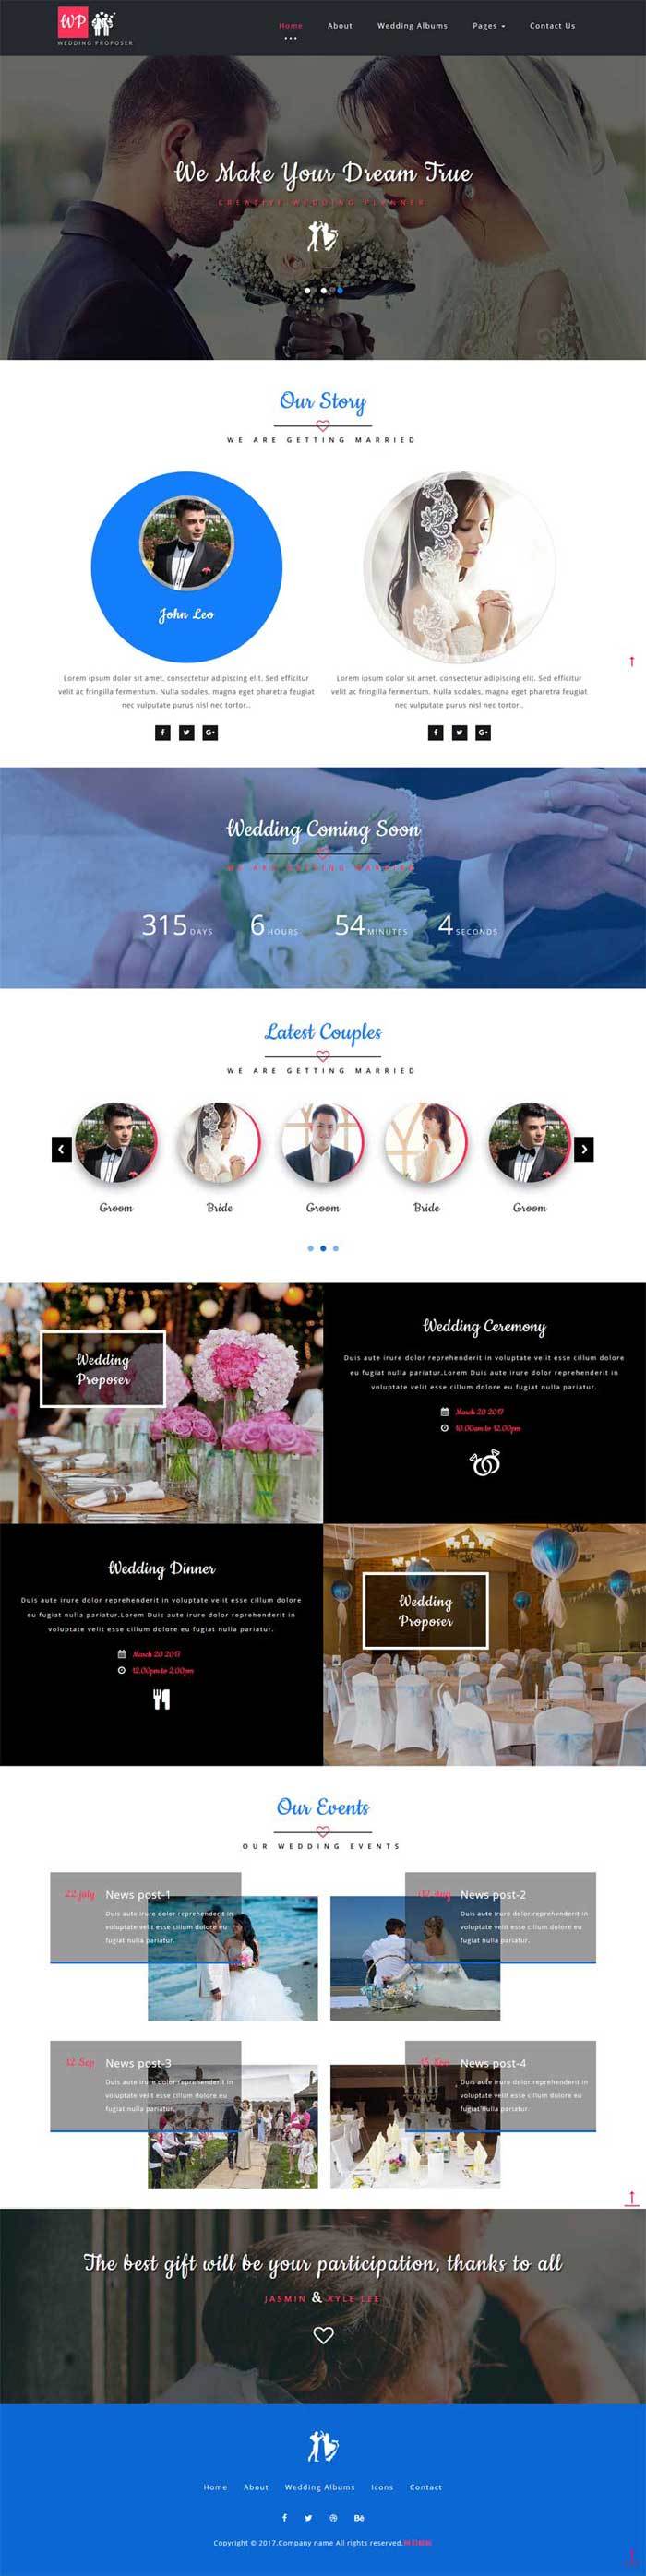 婚纱摄影婚庆公司简单大气的网站模板